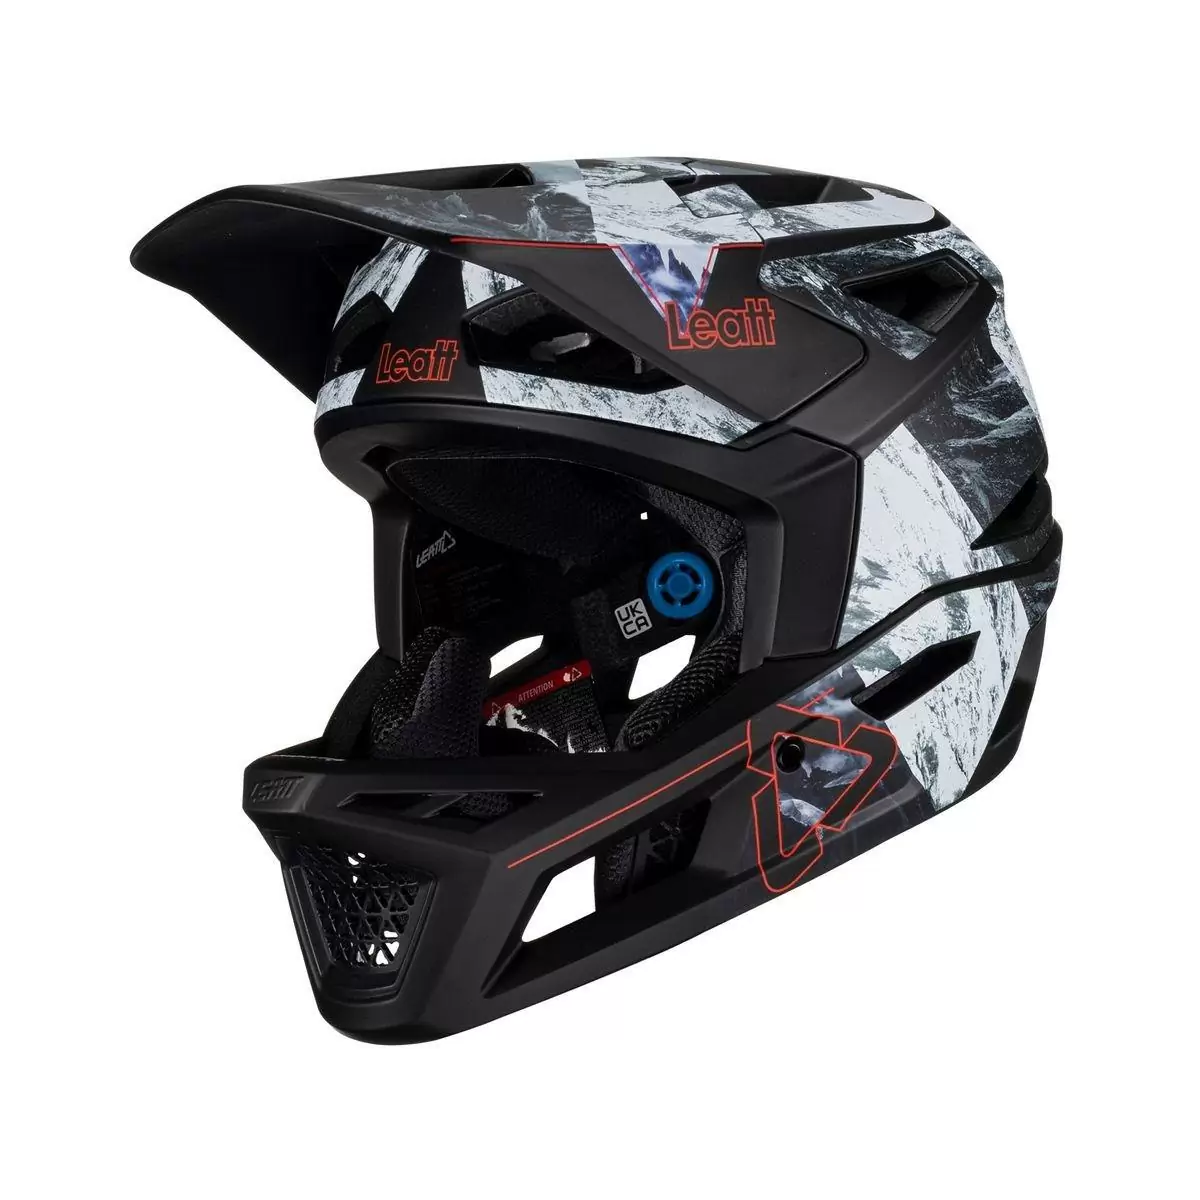 Full-Face Helmet MTB 4.0 Gravity Black/White Size S (51-55cm) - image